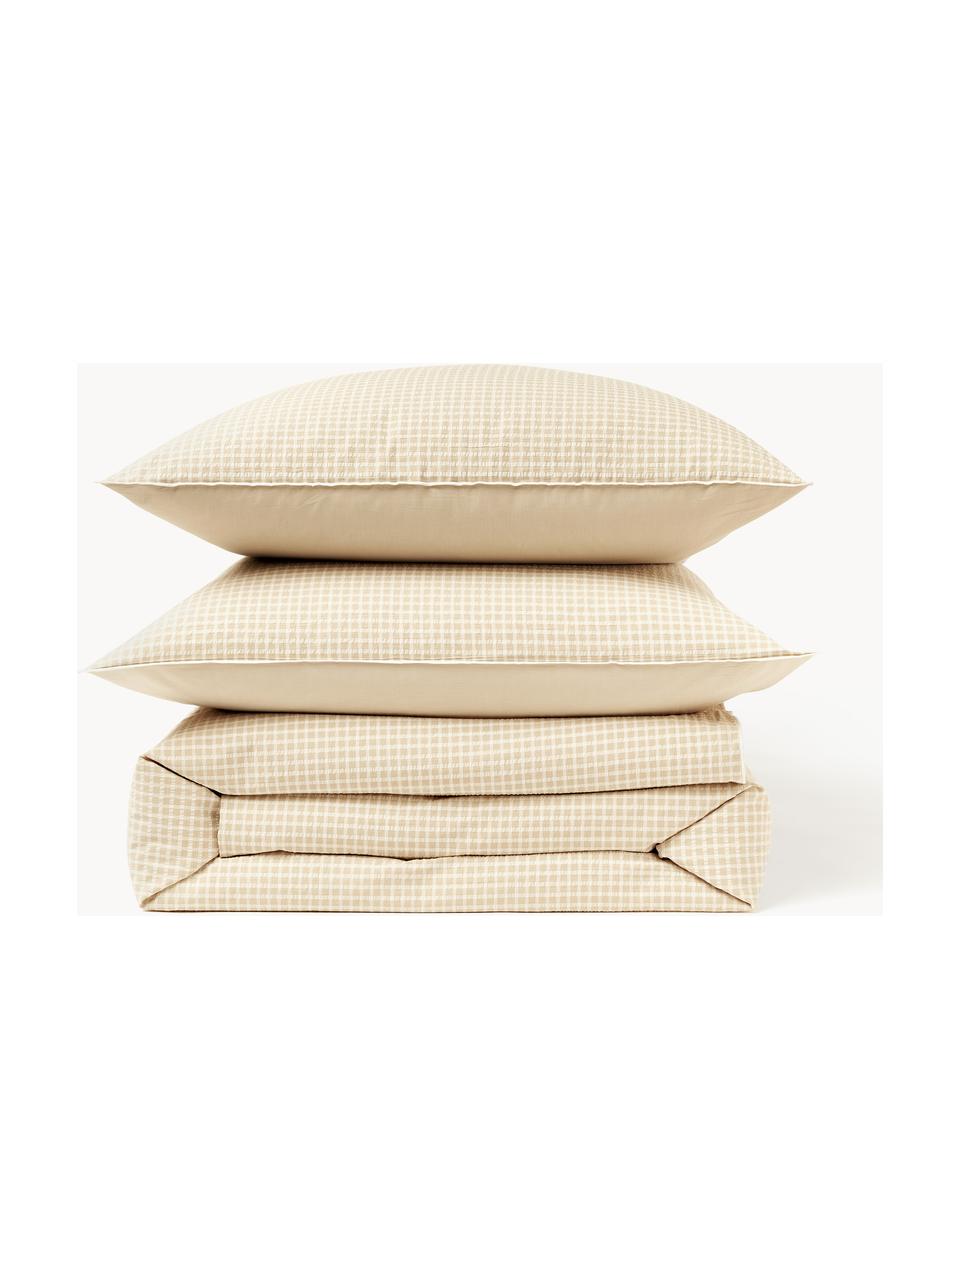 Seersucker-Bettdeckenbezug Davey mit Karo-Muster, Webart: Seersucker Fadendichte 16, Beige, Weiß, B 200 x L 200 cm